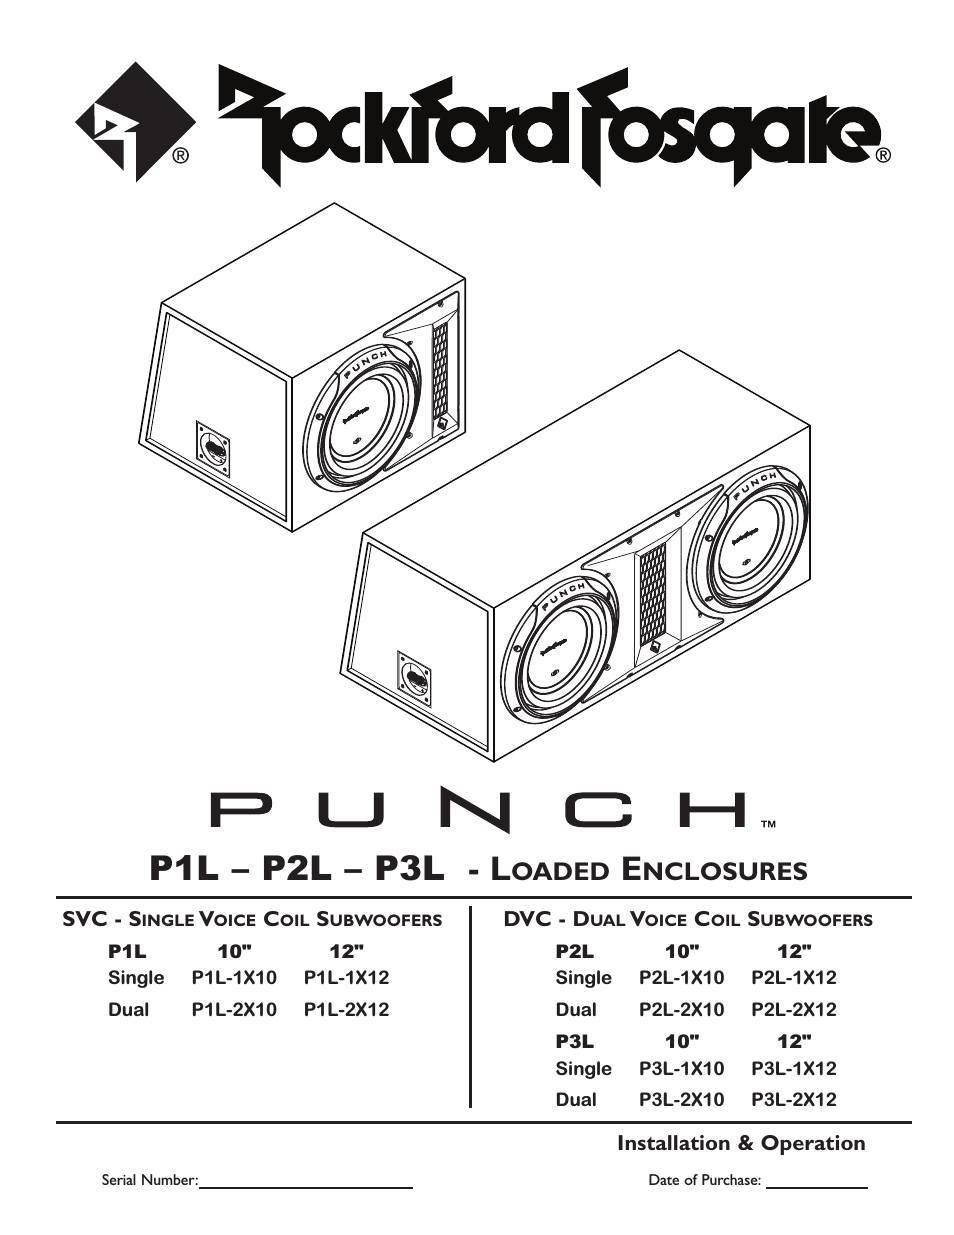 Punch P1L-1X12